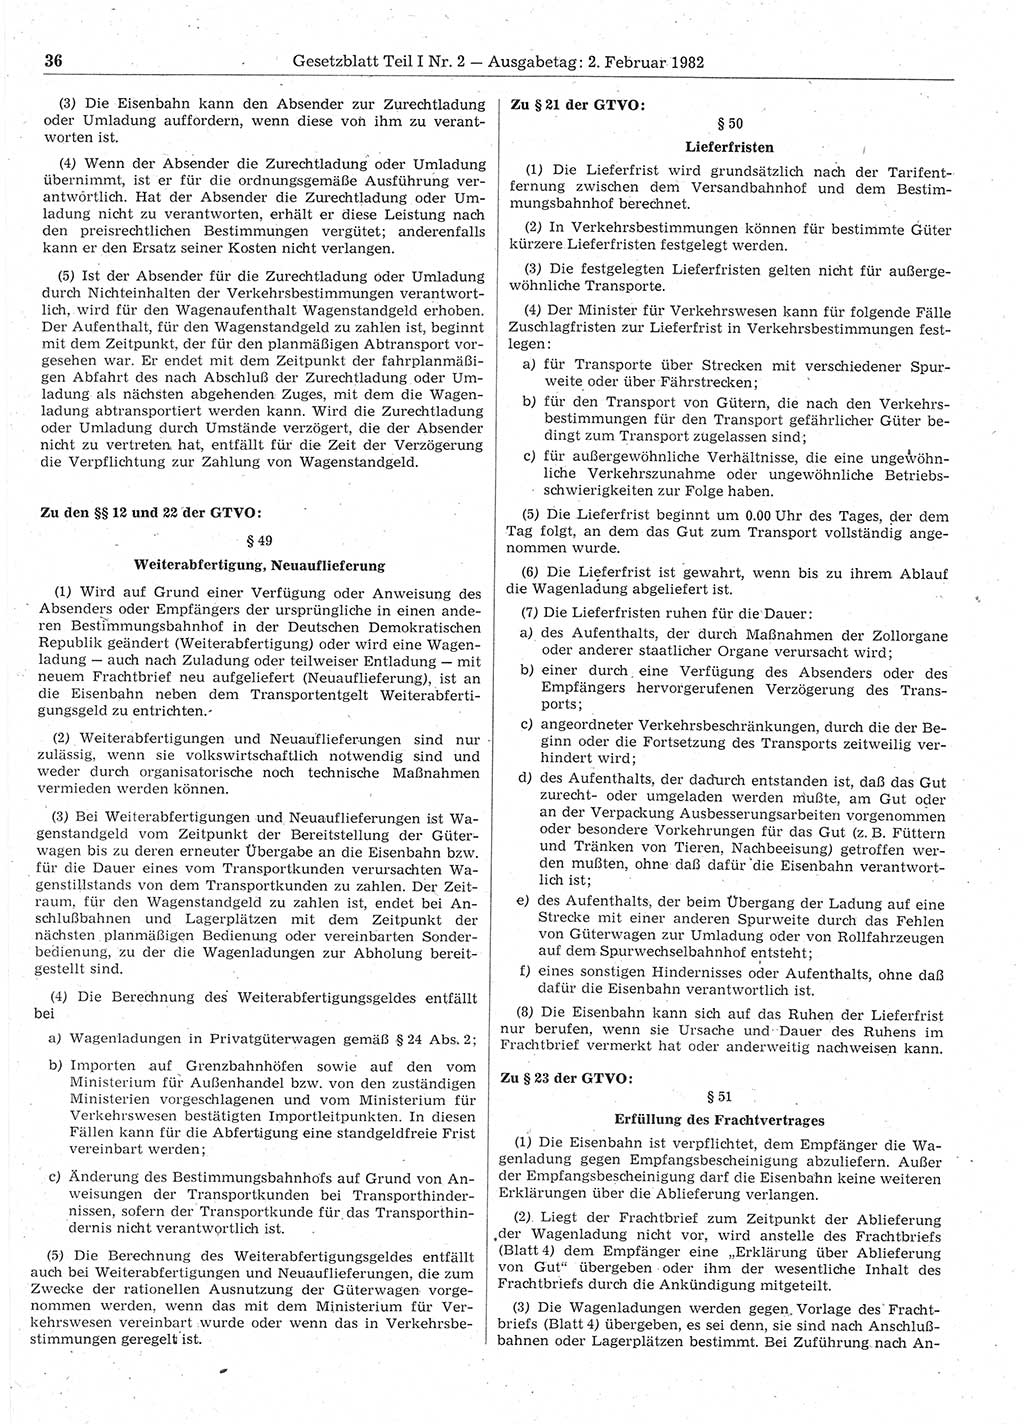 Gesetzblatt (GBl.) der Deutschen Demokratischen Republik (DDR) Teil Ⅰ 1982, Seite 36 (GBl. DDR Ⅰ 1982, S. 36)